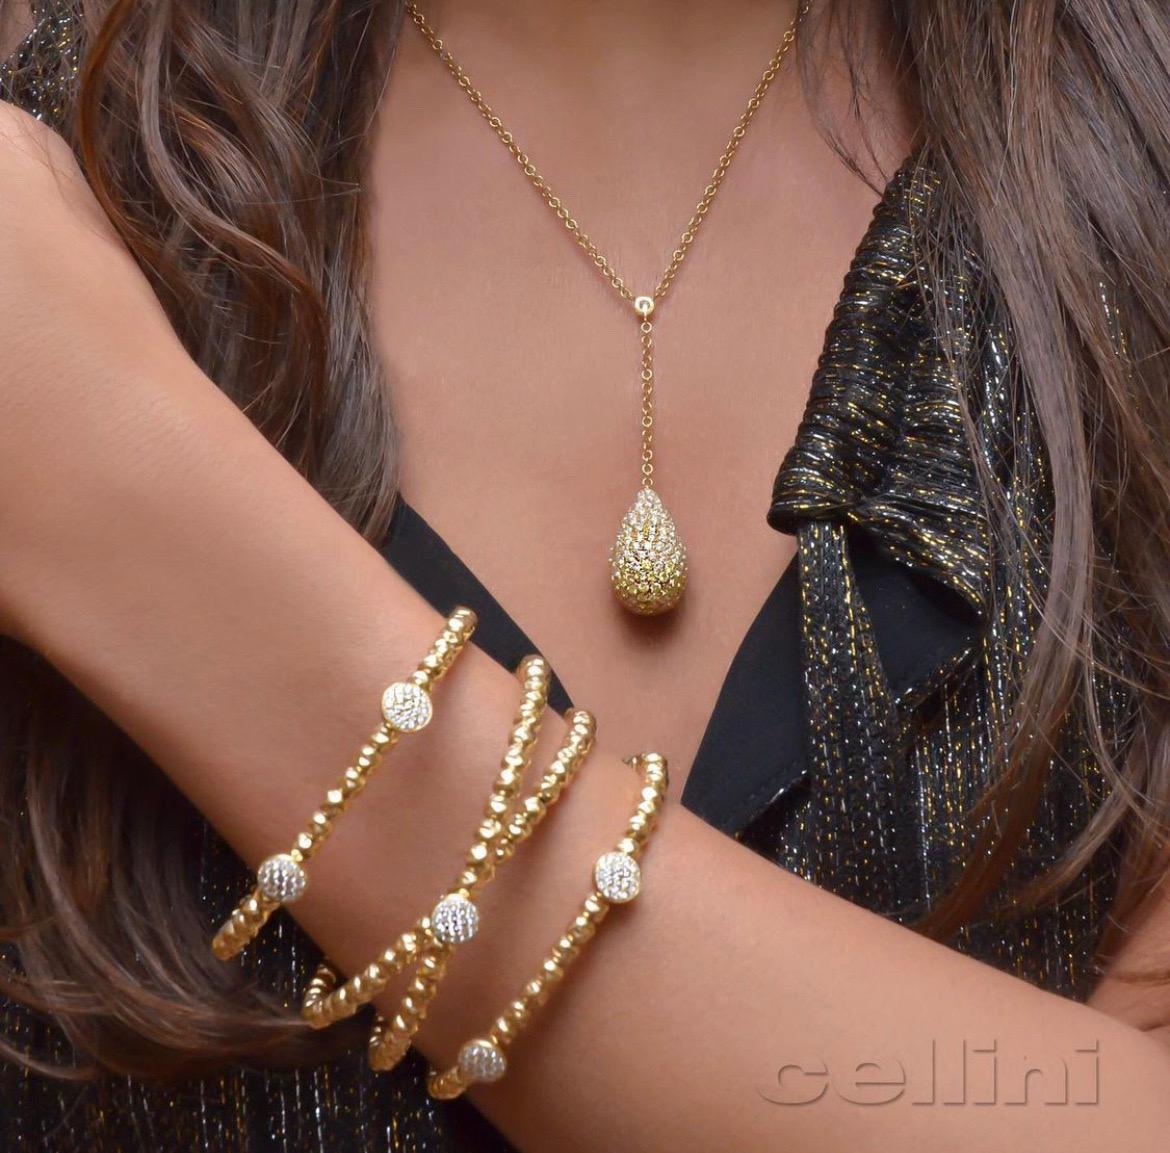 Ce bracelet manchette ouvert à ressort, confortable et flexible, est composé de quatre rangées de perles en or rose 18 carats, avec cinq disques de diamants pavés. Diamants ronds et brillants de 1,16 carats au total.
Bracelet magnifique et très